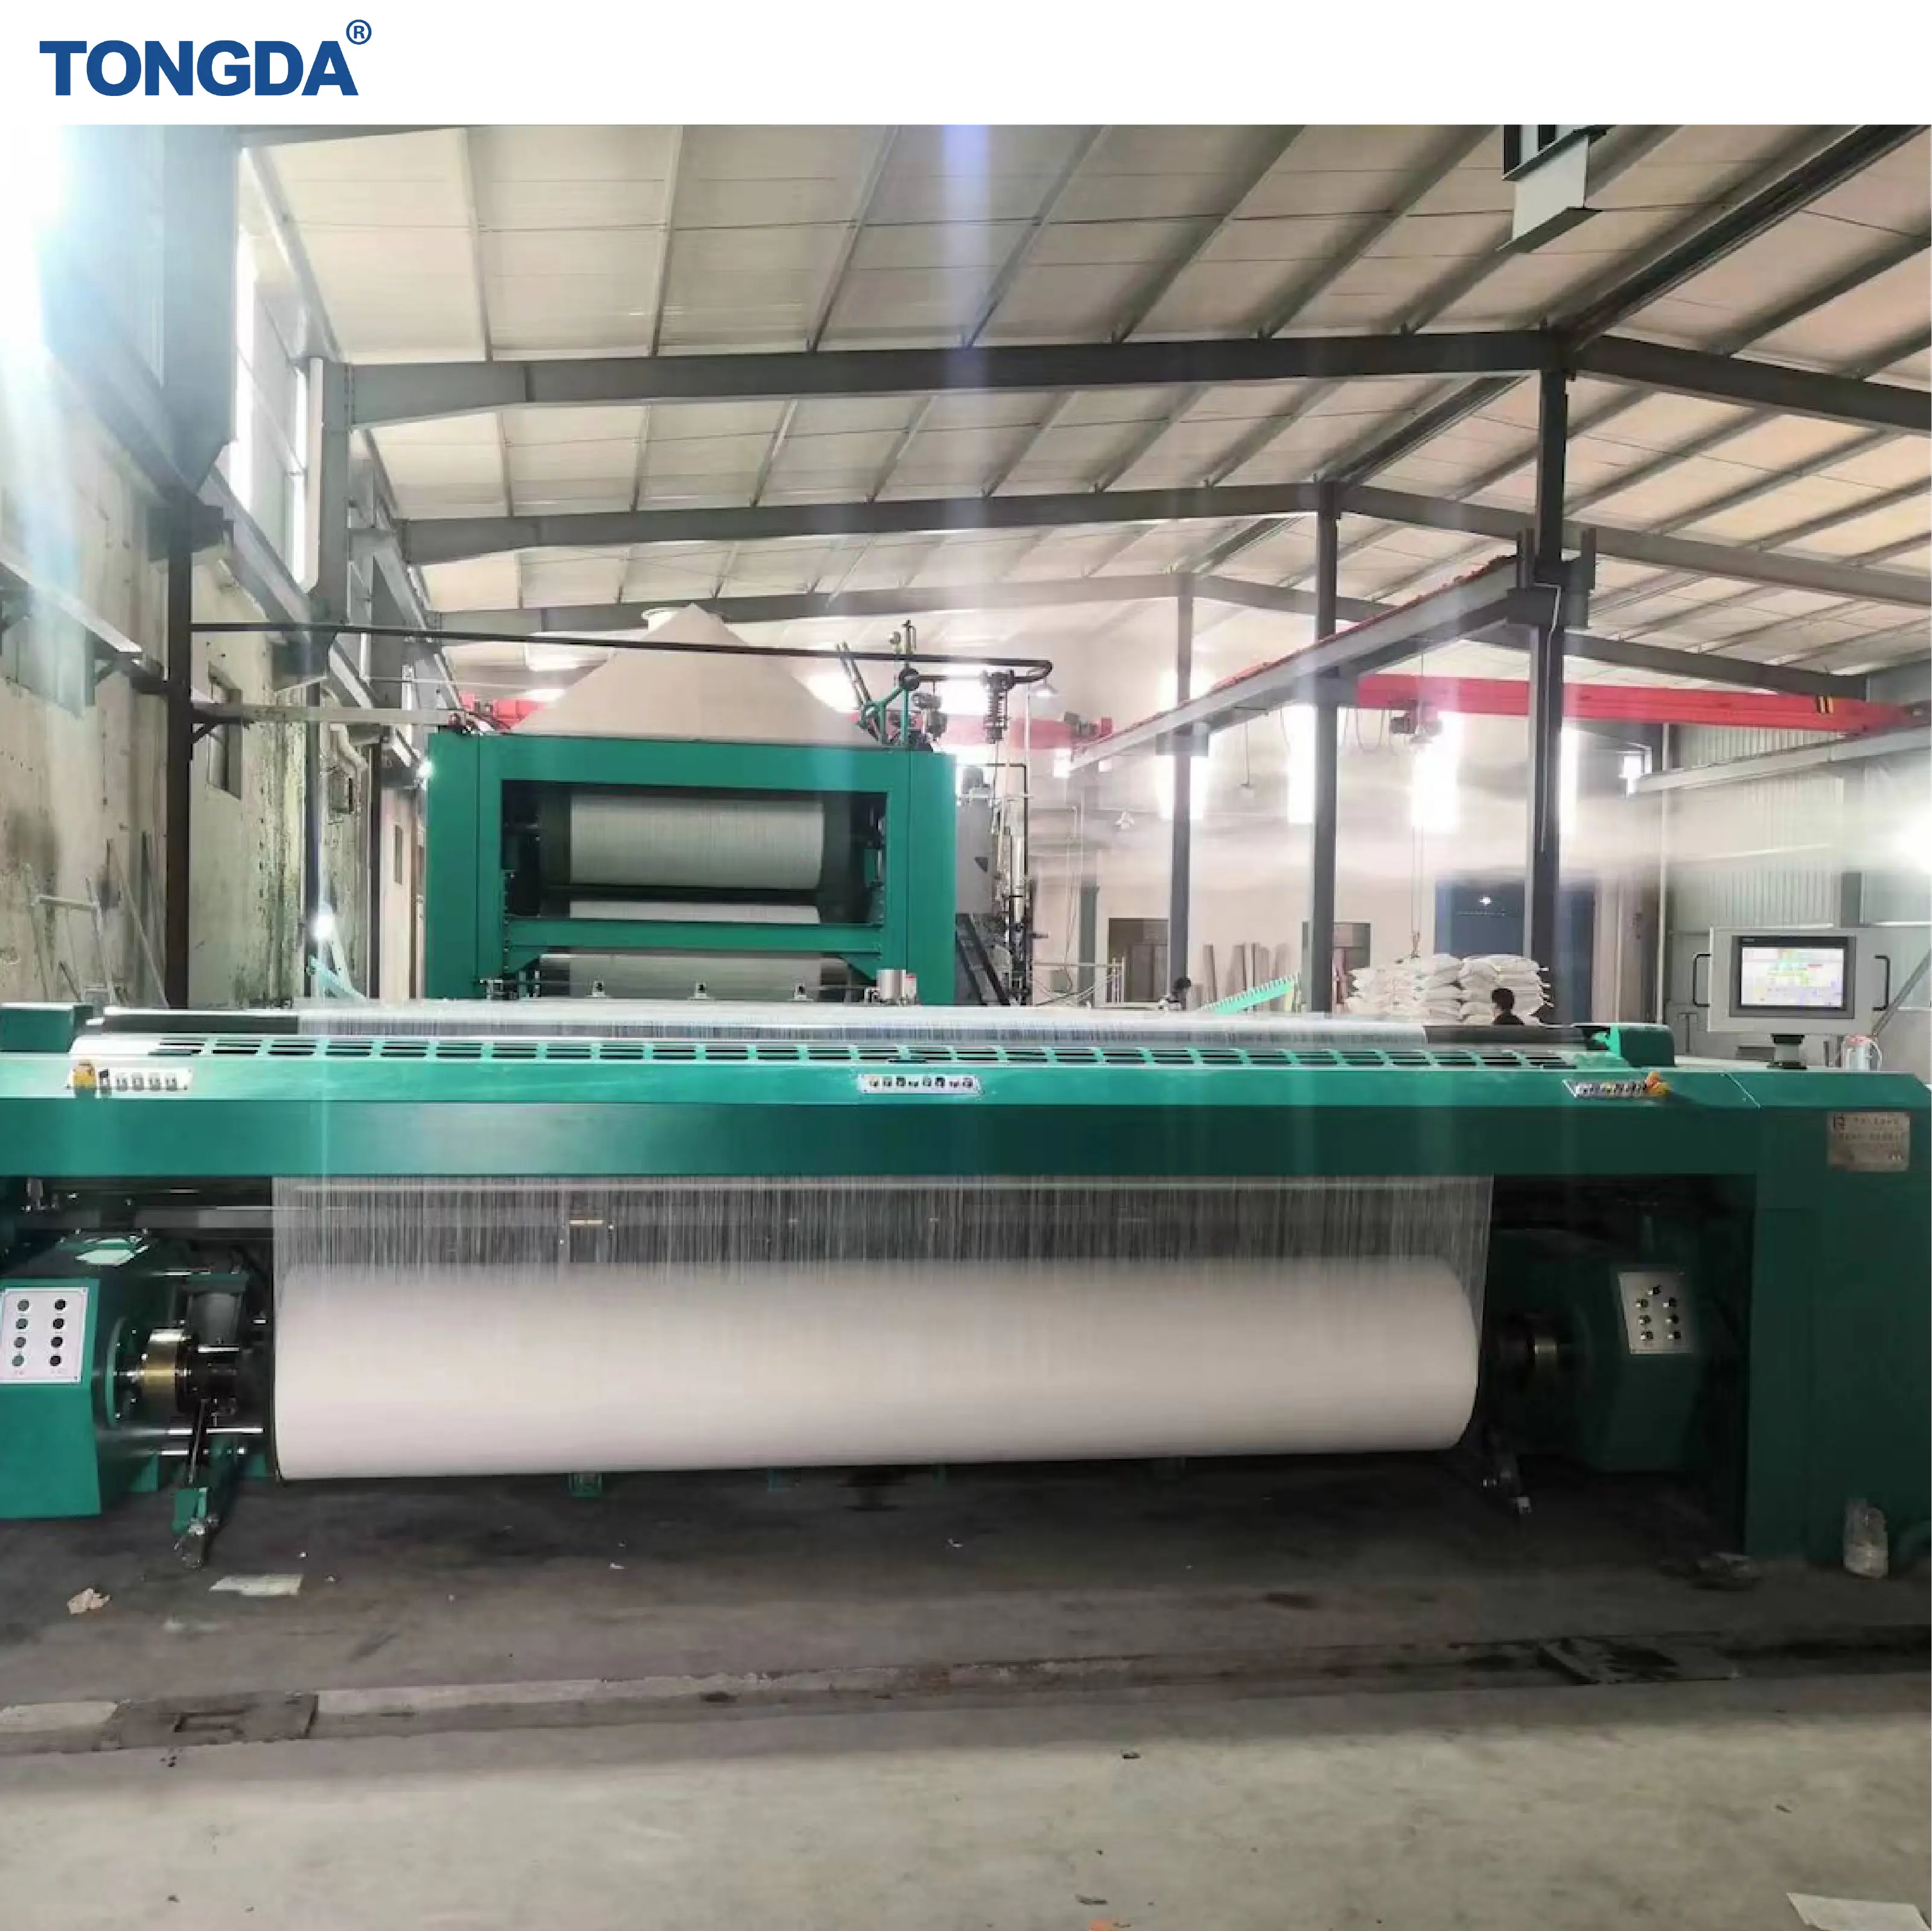 Tongda, текстильная ткацкая машина с открытой шириной